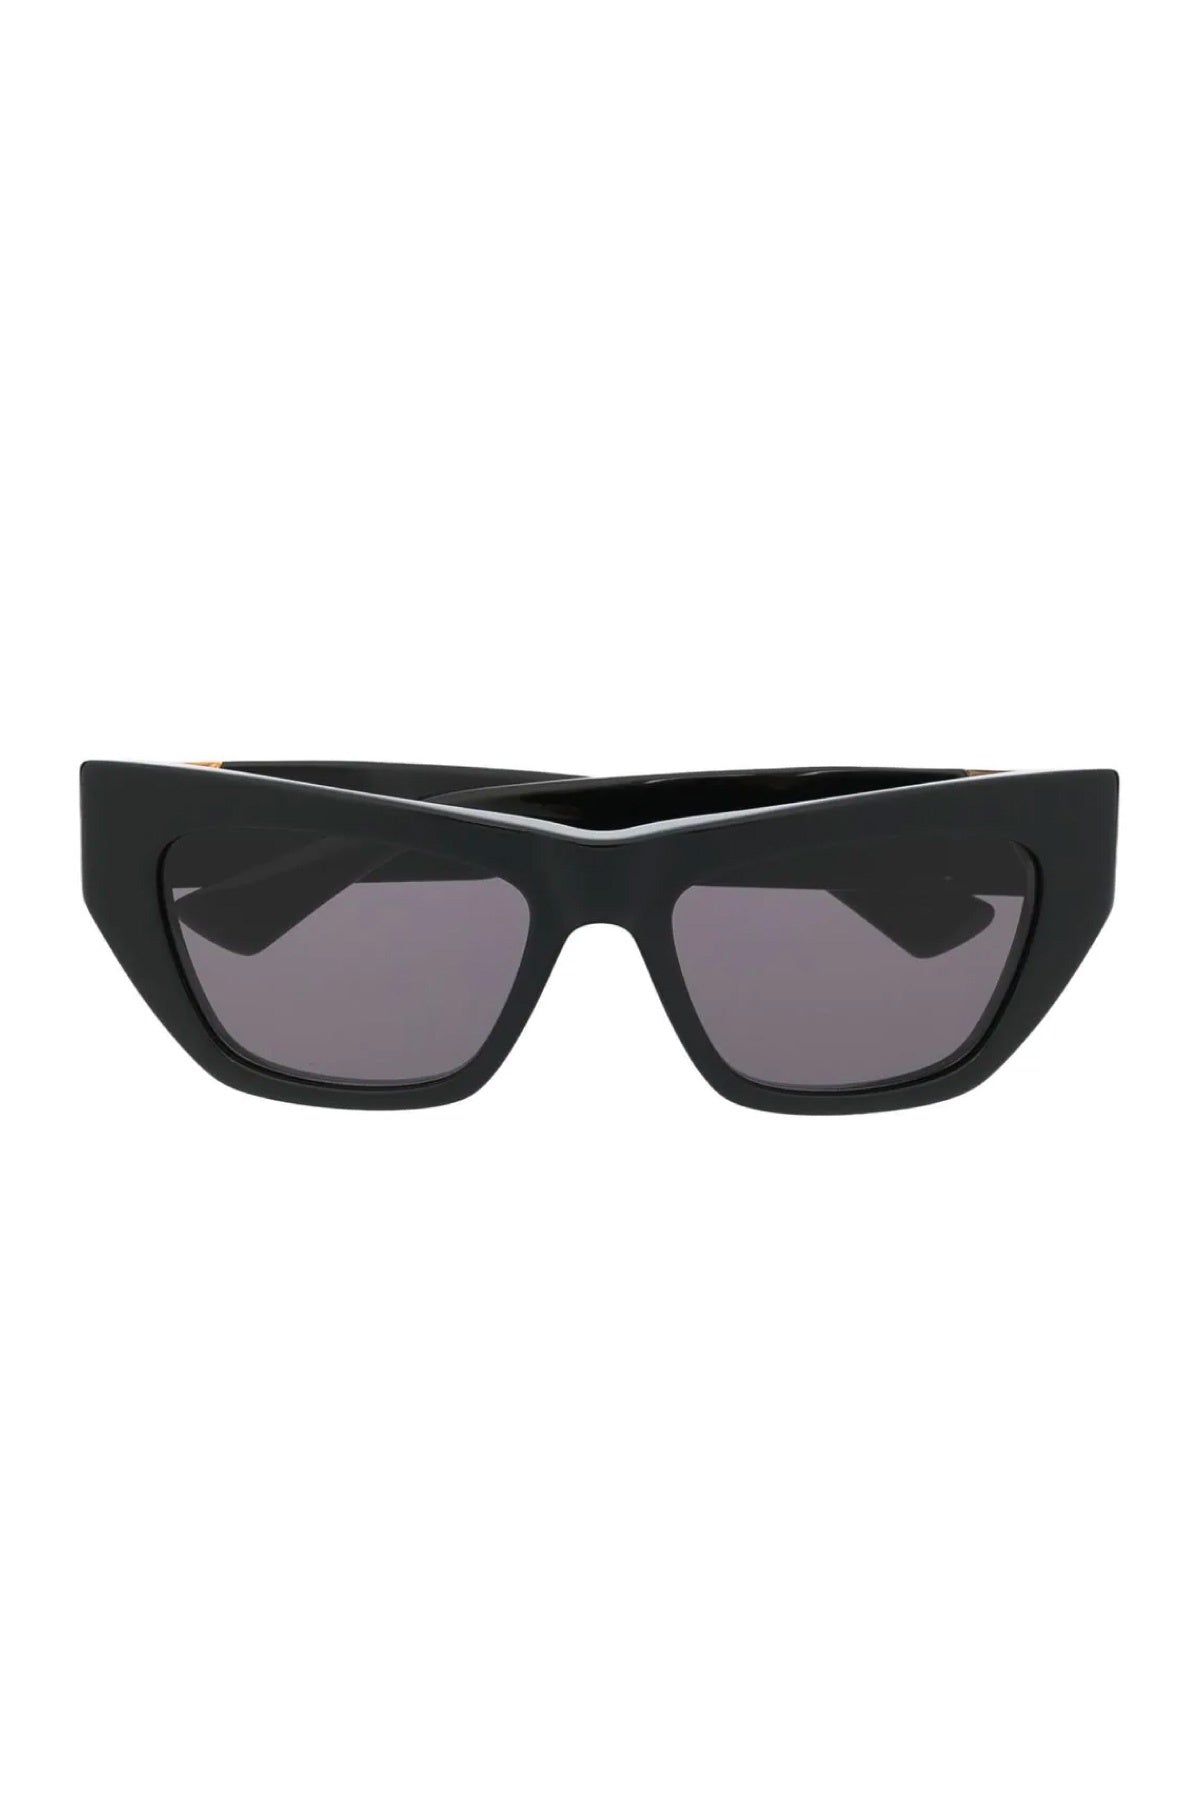 Bottega Veneta Oversized Cat-Eye Sunglasses - Black